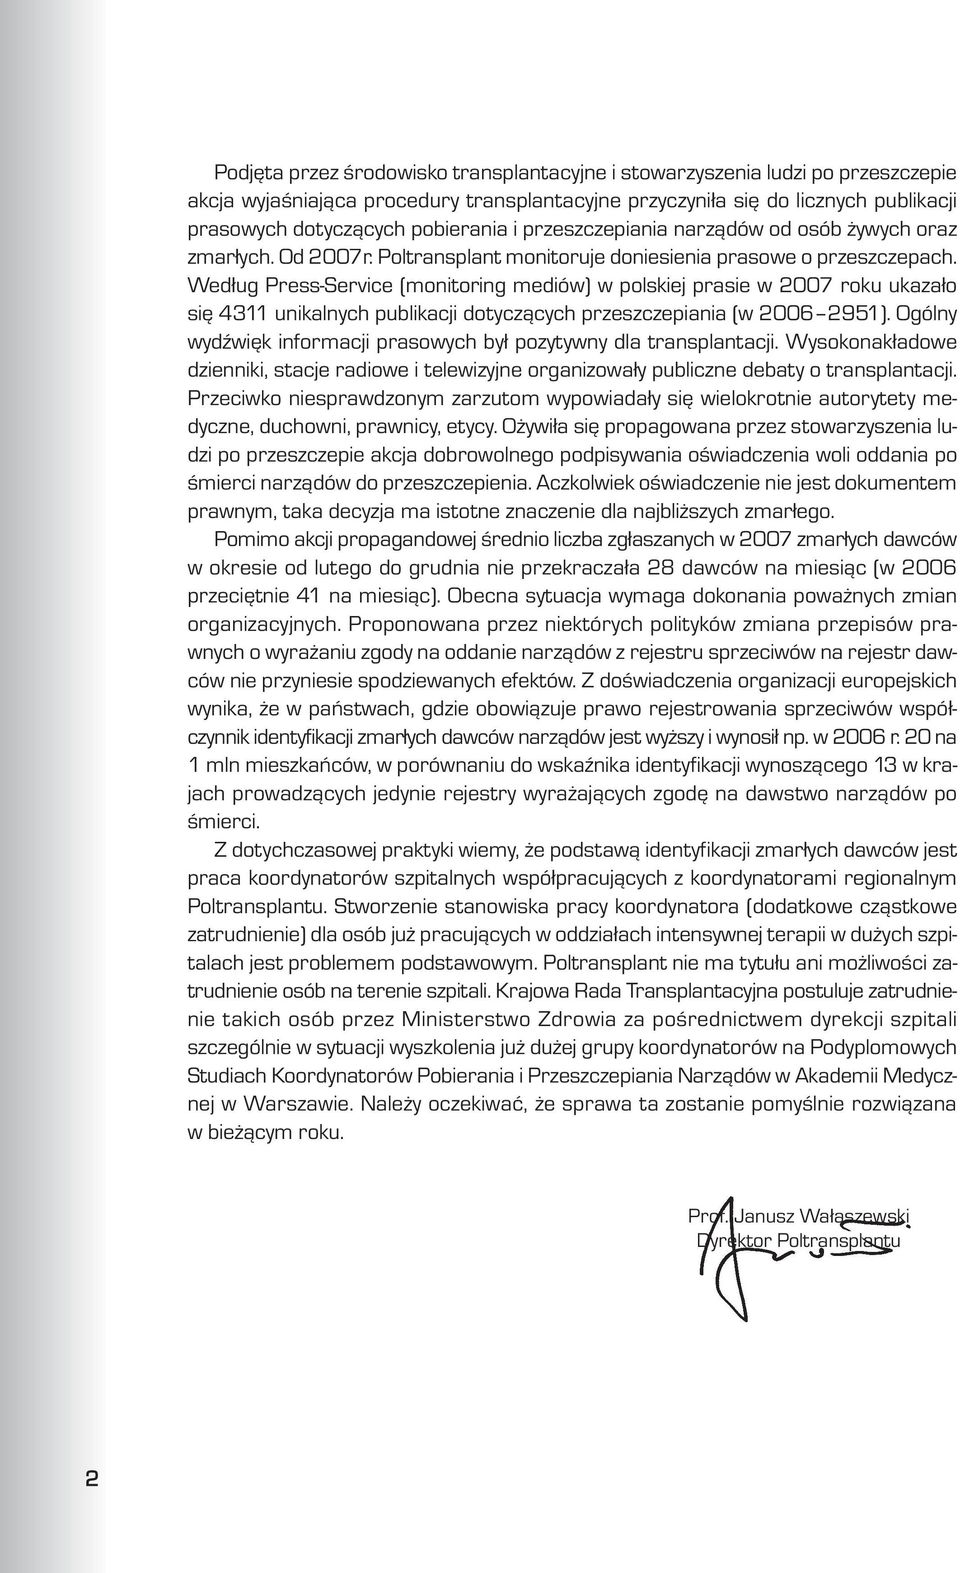 Wed³ug Press-Service (monitoring mediów) w polskiej prasie w 2007 roku ukaza³o siê 4311 unikalnych publikacji dotycz¹cych przeszczepiania (w 2006 2951).